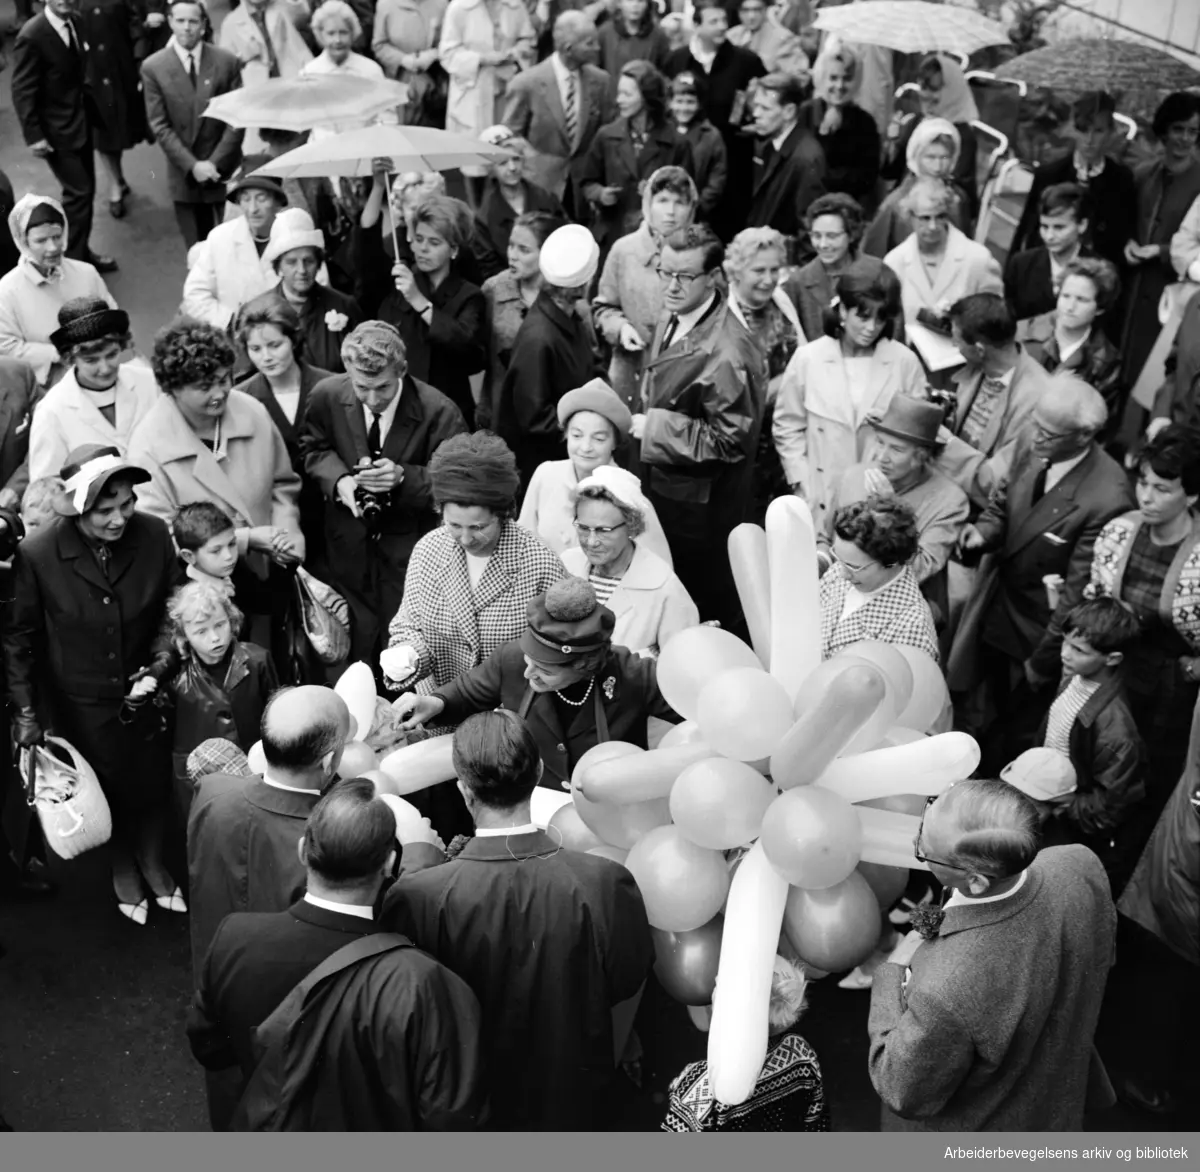 Ordfører Brynjulf Bull foretok den offisielle åpningen av Vikaterrassene i Oslo. 26 August 1964. I folkemengden: Wenche Myhre og journalist Tor von Krogh fra NRK.